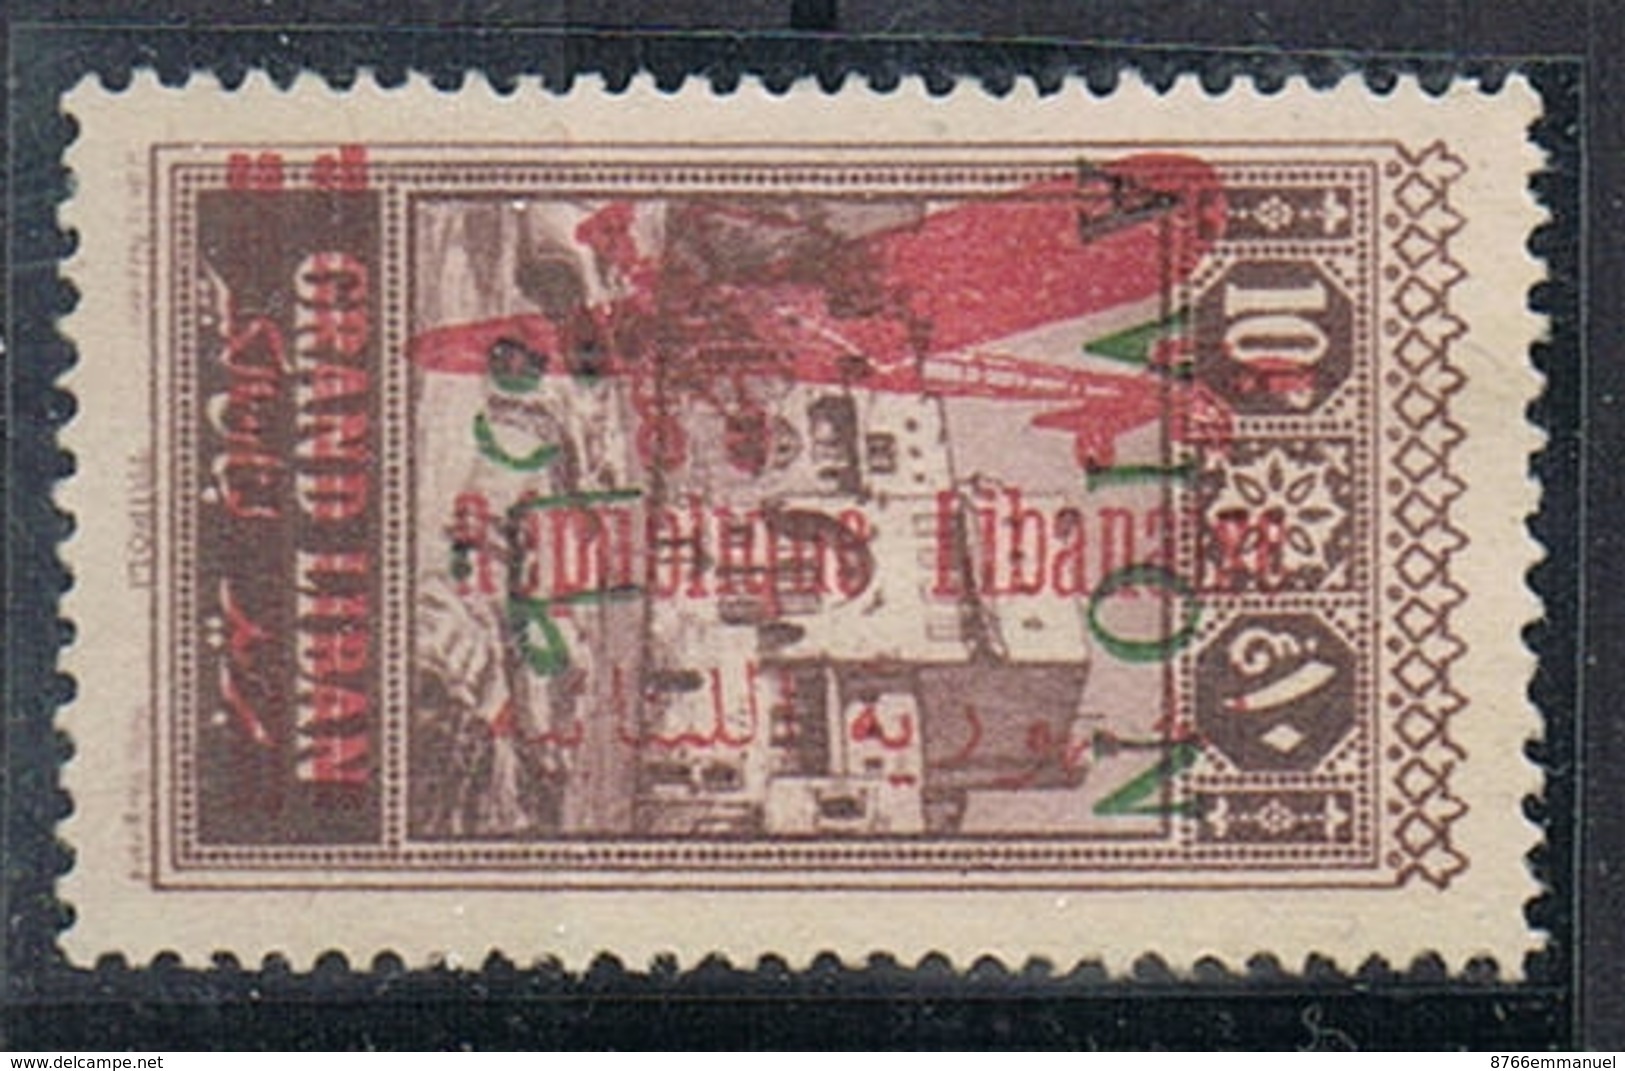 GRAND LIBAN AERIEN N°35a N*  Variété Surcharge Apposée Sur Timbre Aerien N°12 (surcharge Verte +rouge) - Airmail